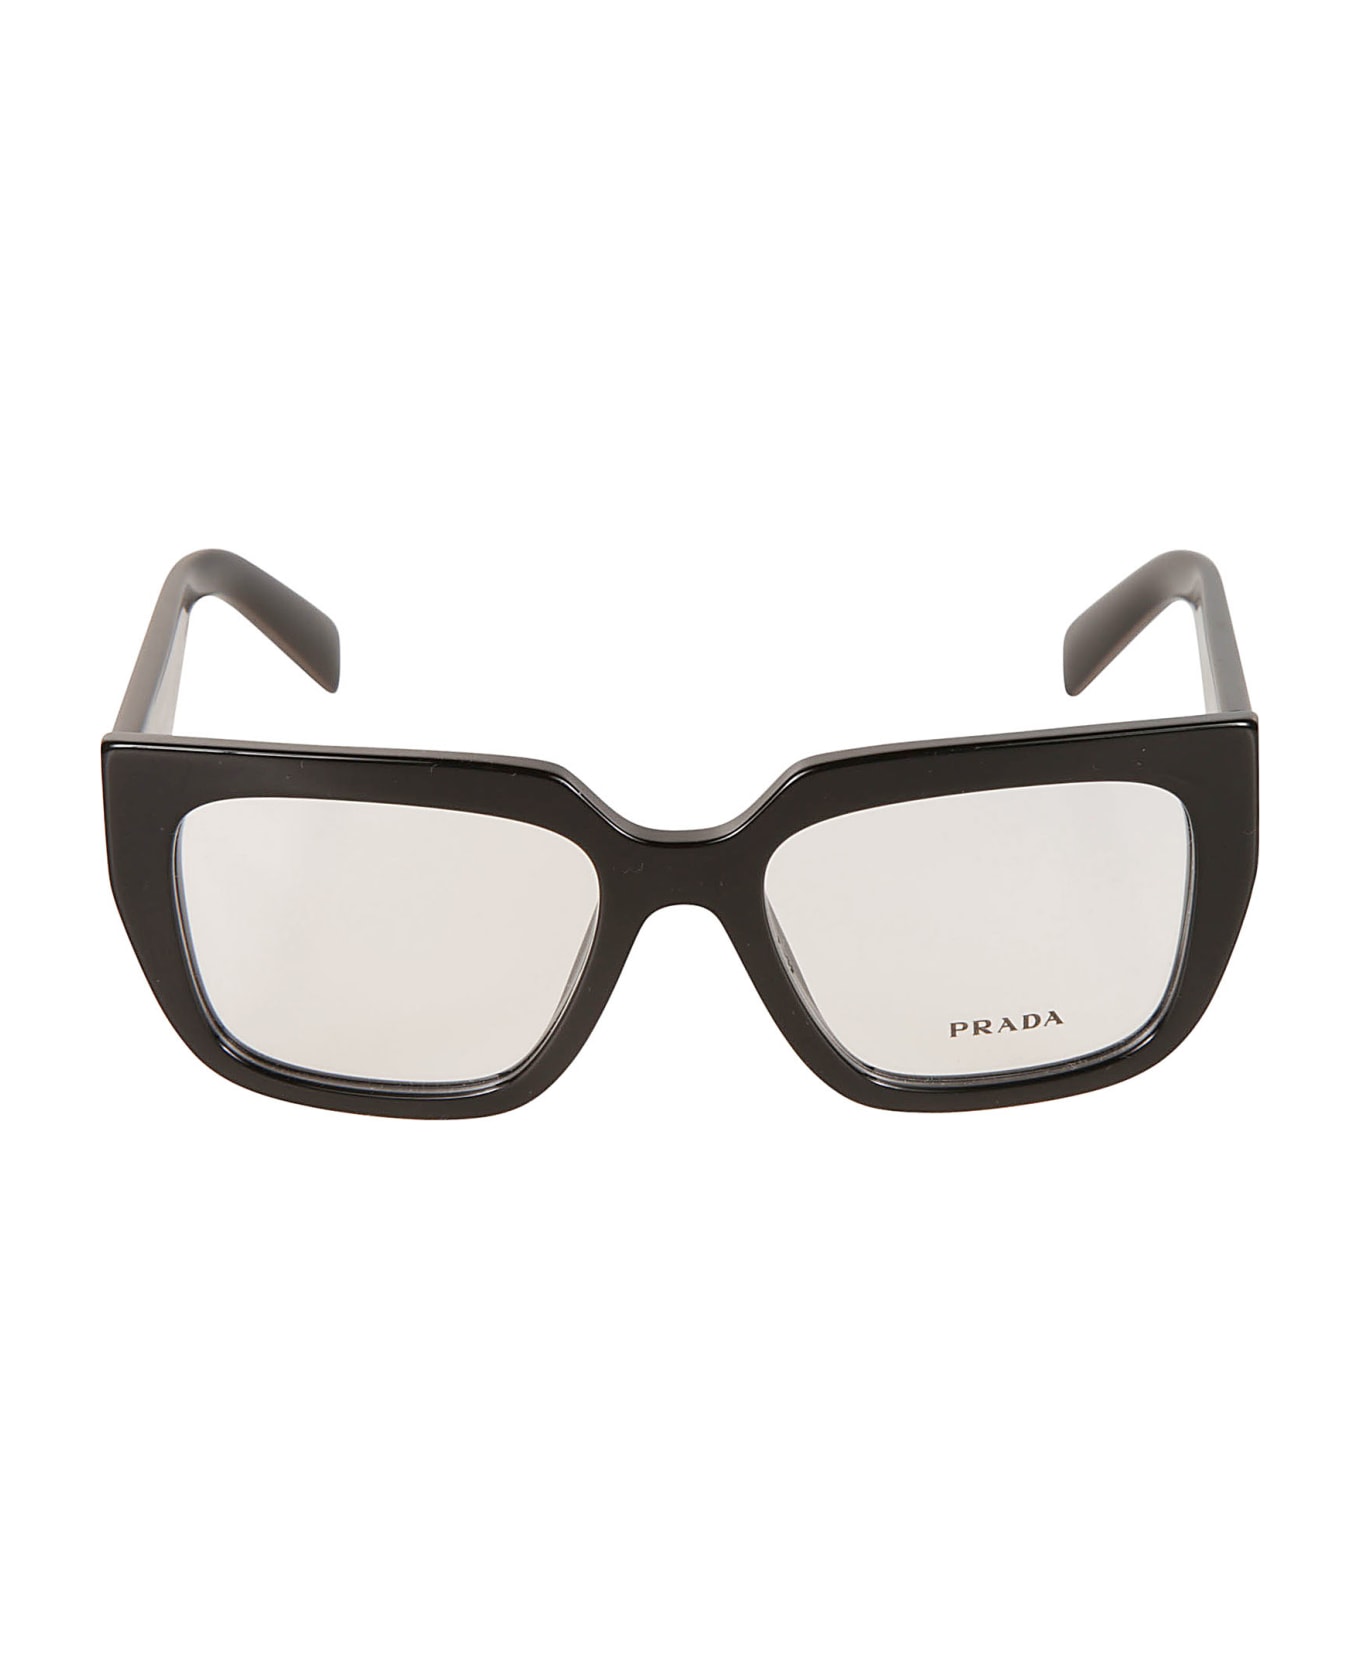 Prada Eyewear A03v Vista Frame - 16K1O1